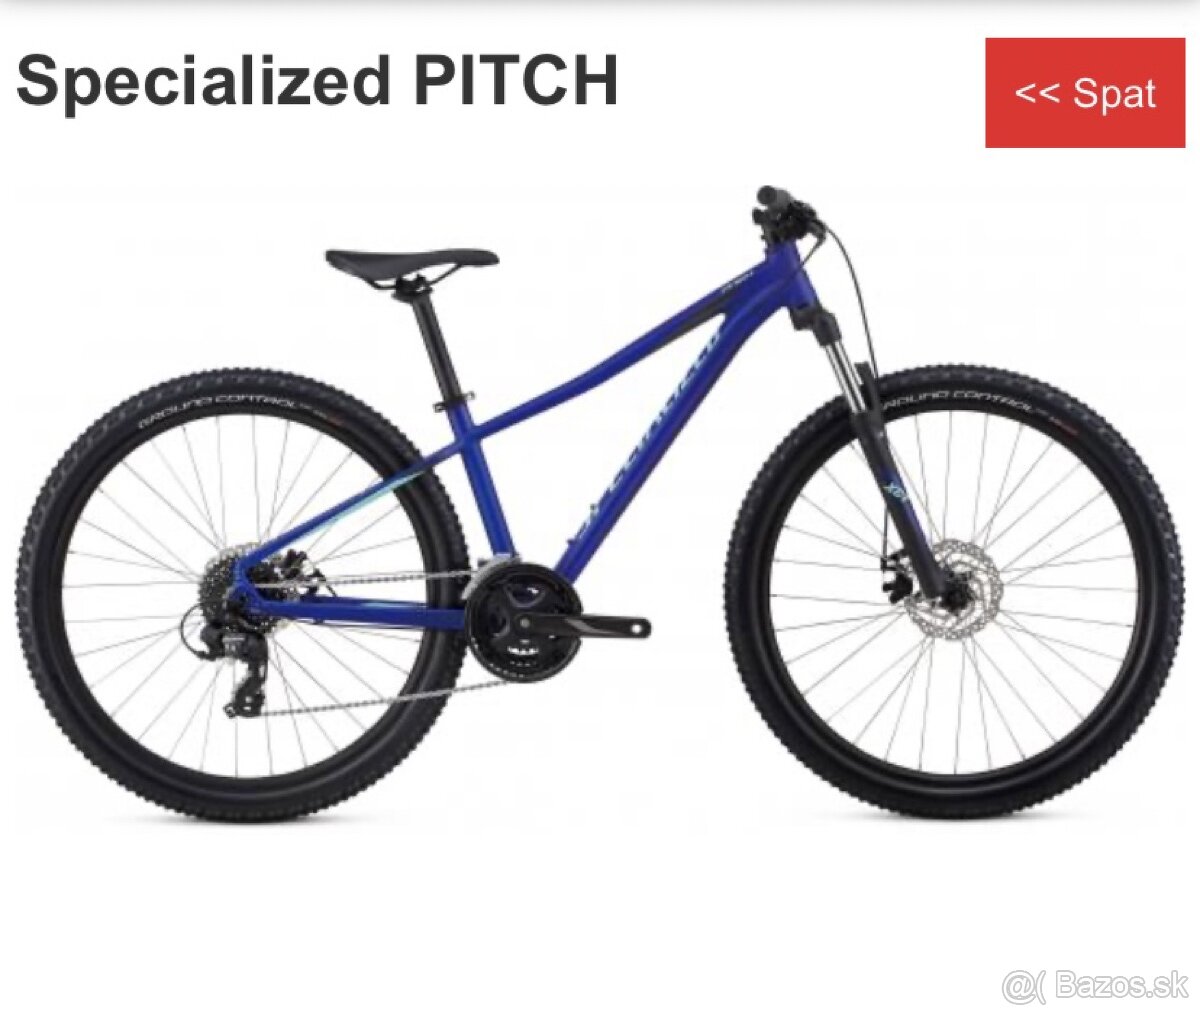 specialized pitch S